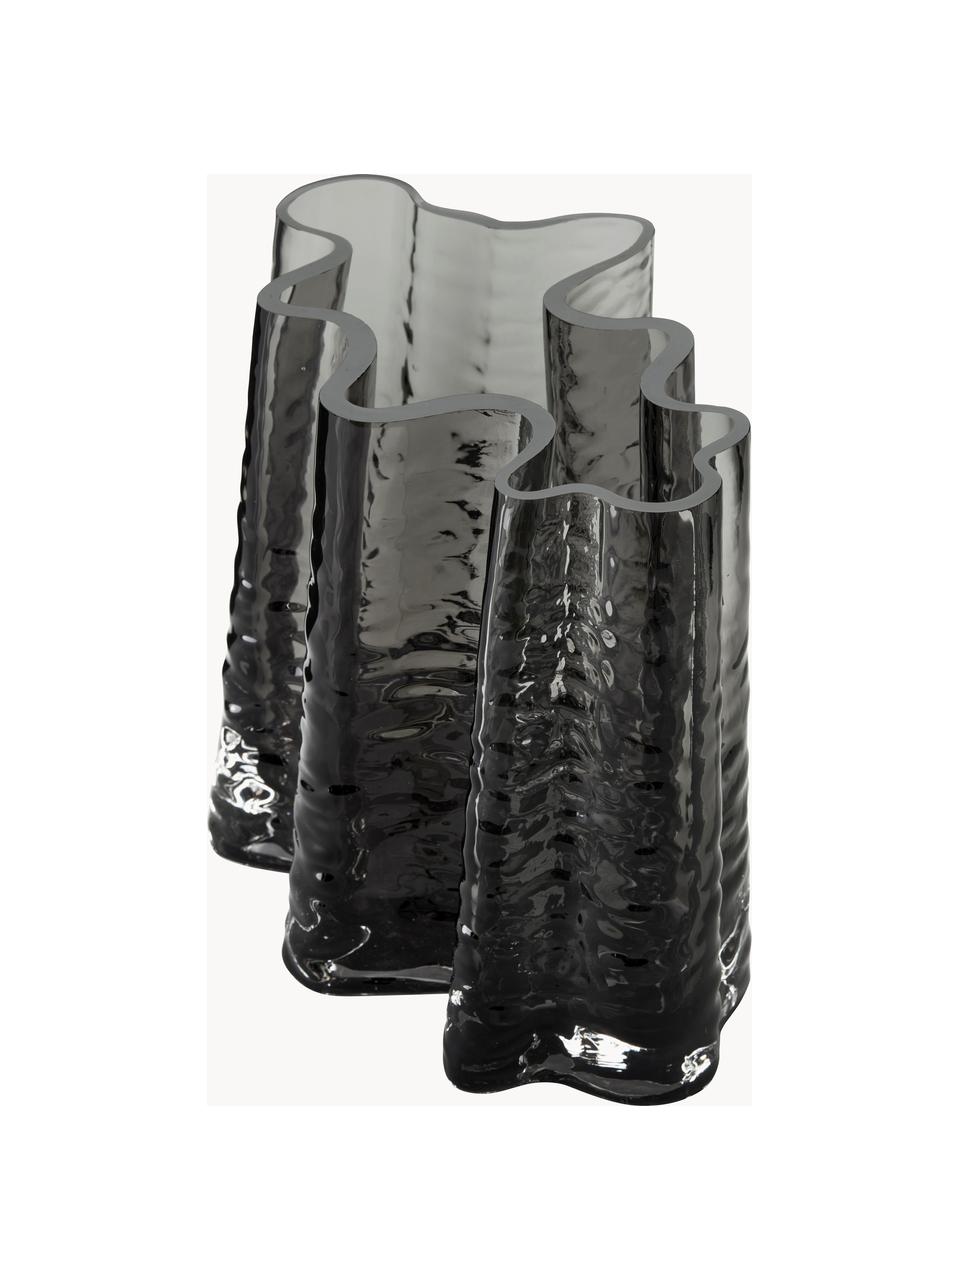 Mundgeblasene Glas-Vase Gry mit strukturierter Oberfläche, H 19 cm, Glas, mundgeblasen, Anthrazit, B 24 x H 19 cm